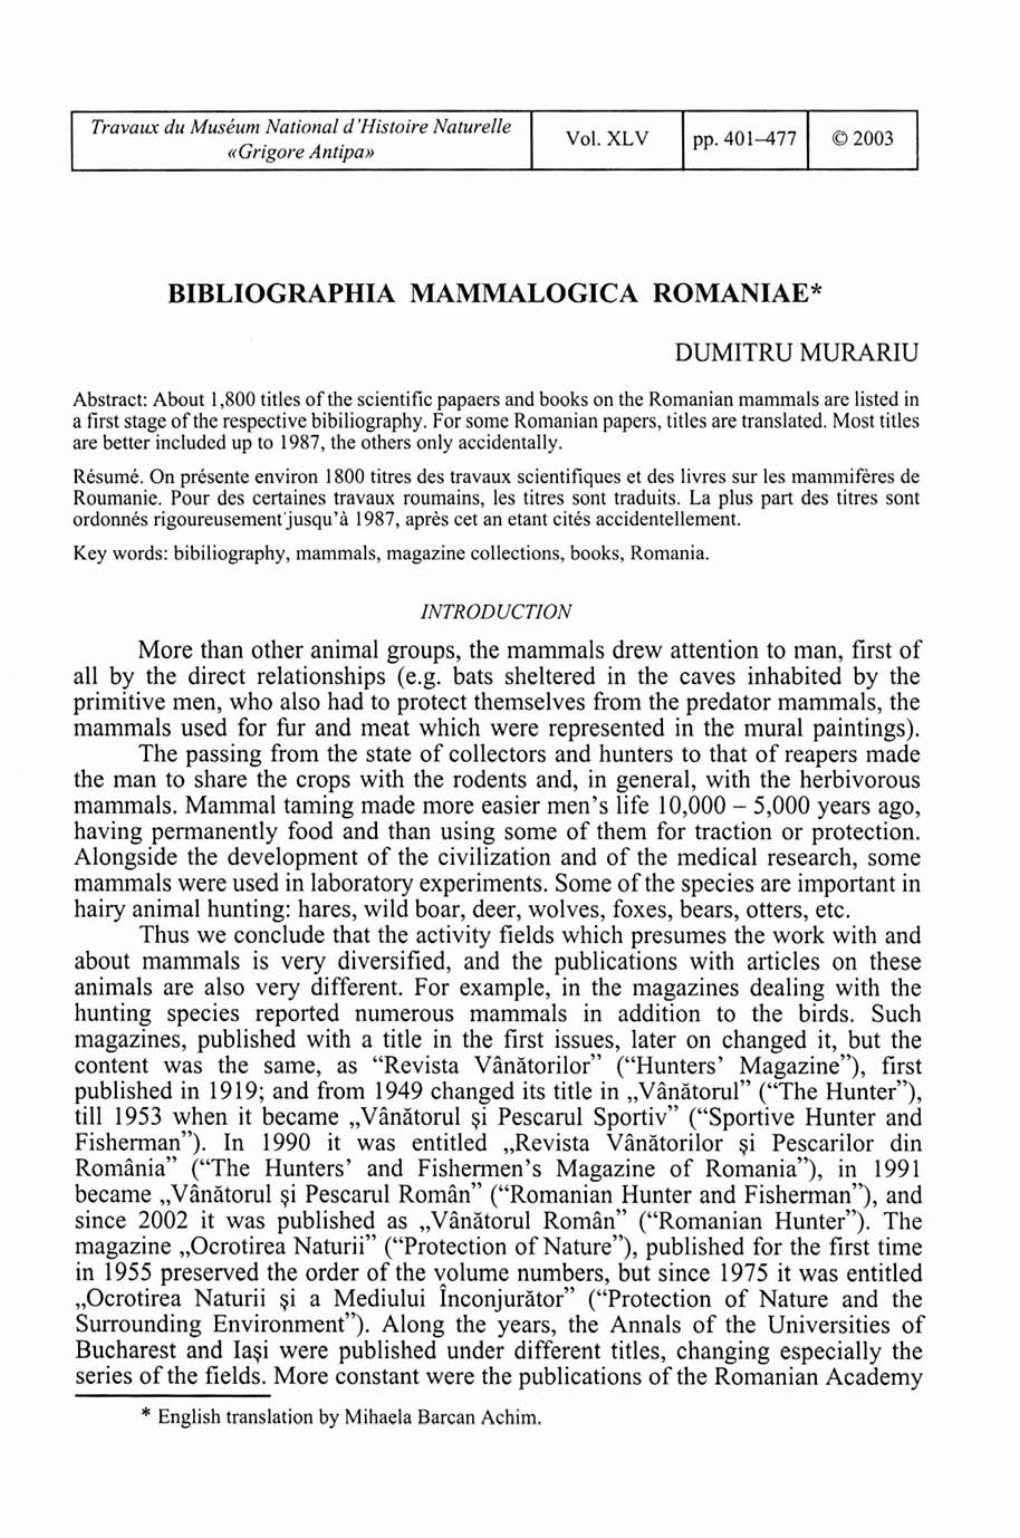 Bibliographia Mammalogica Romaniae*